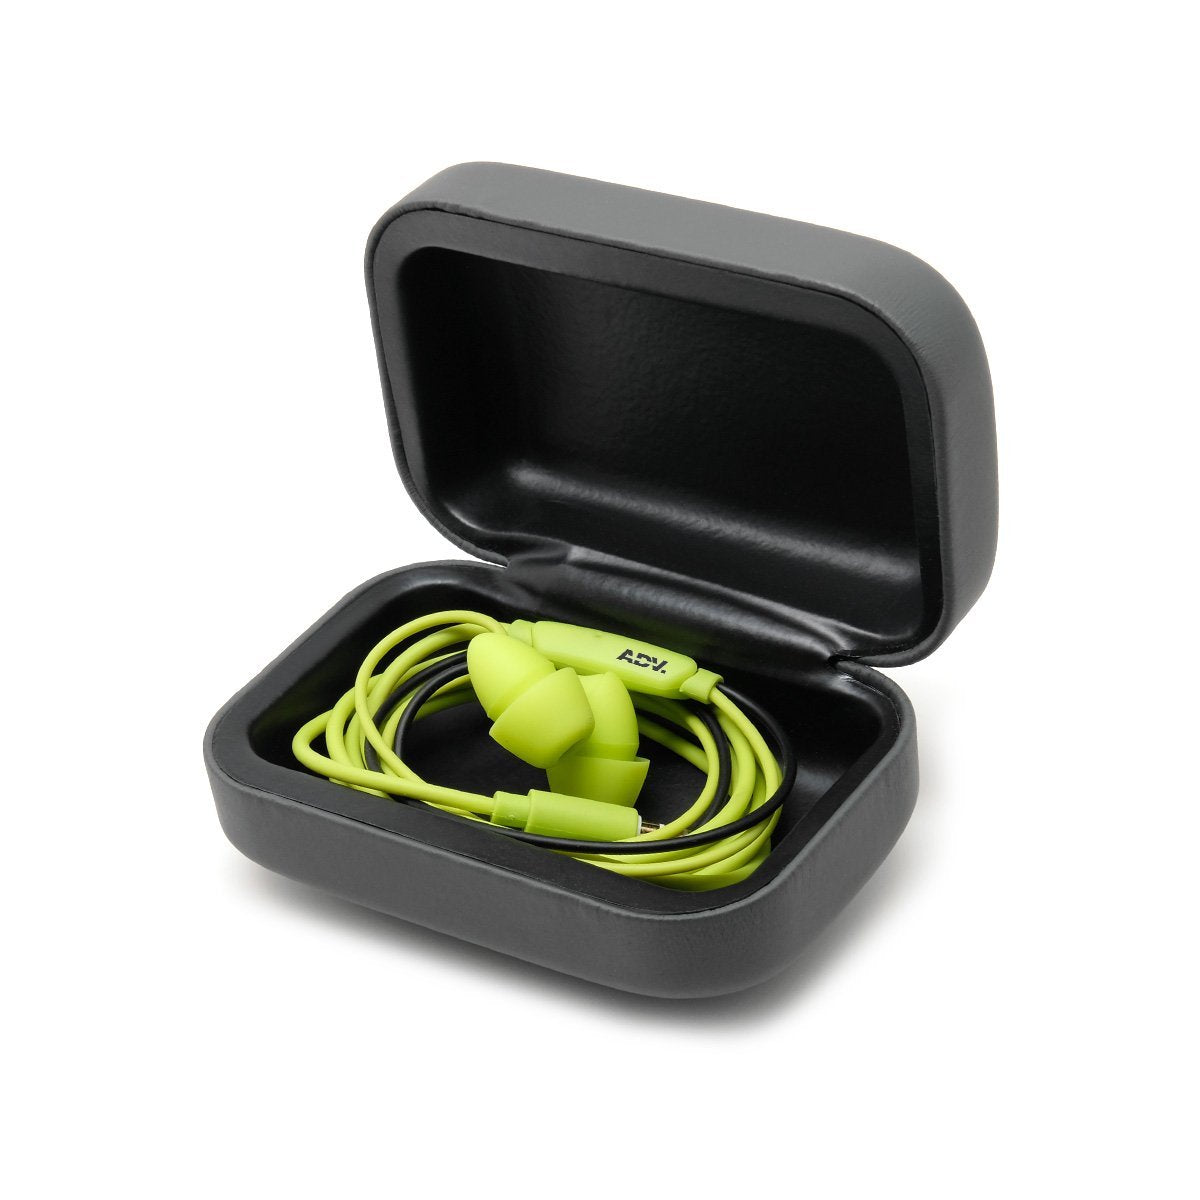 ADV. Snap Case Carry Small Earphones Eartune Ear Plugs Model X+